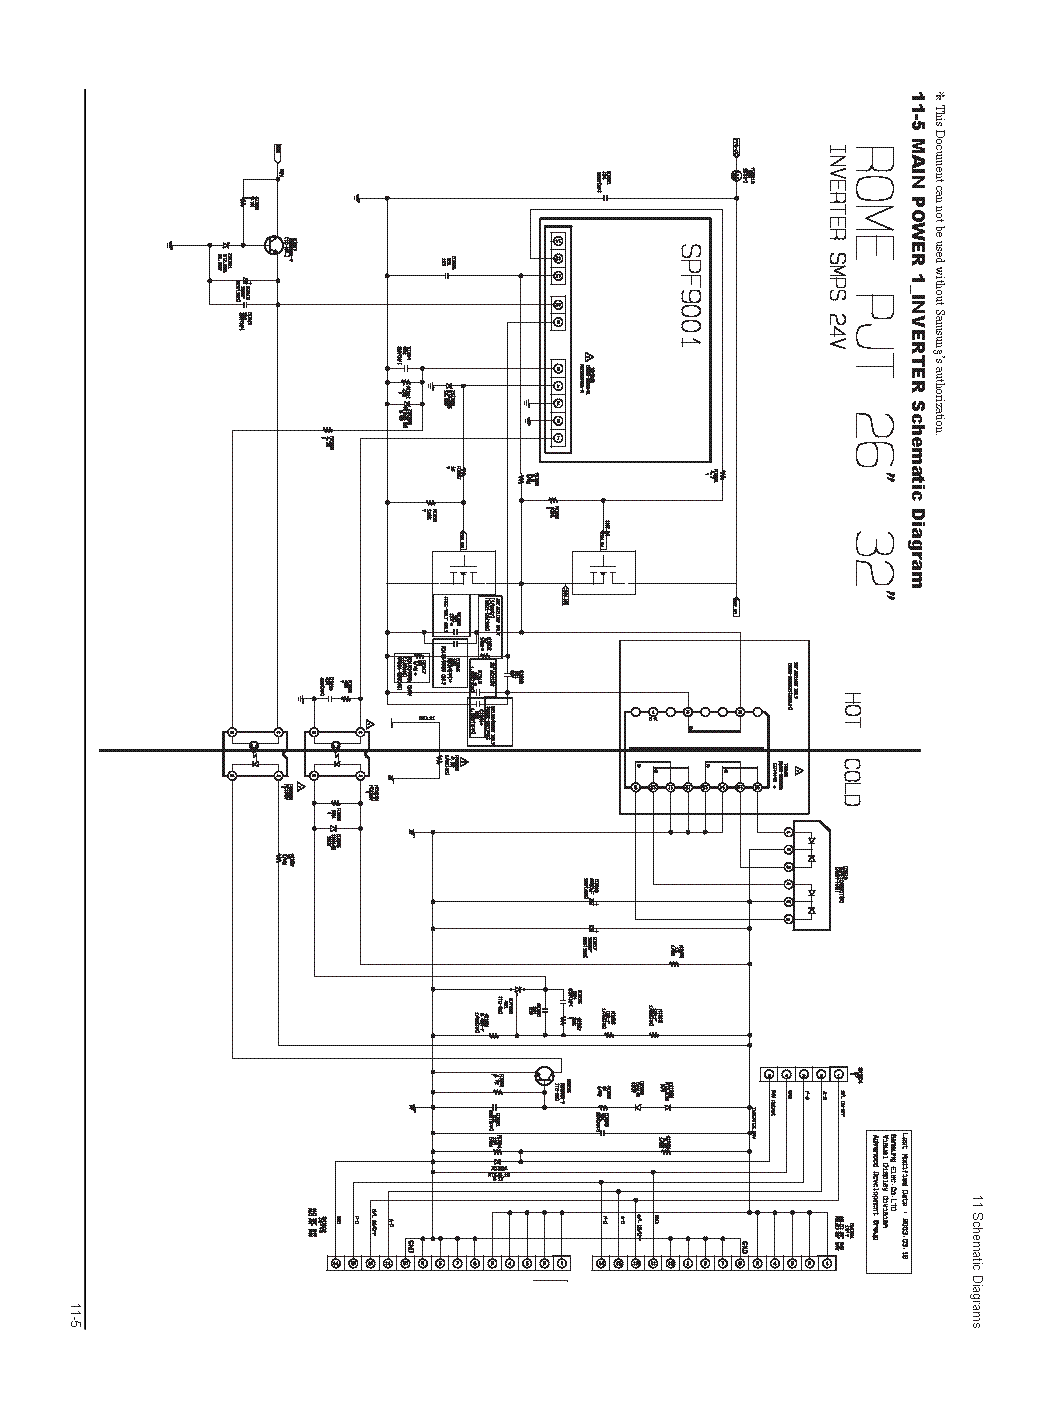 Smps Block Diagram And Working Pdf - Diagram